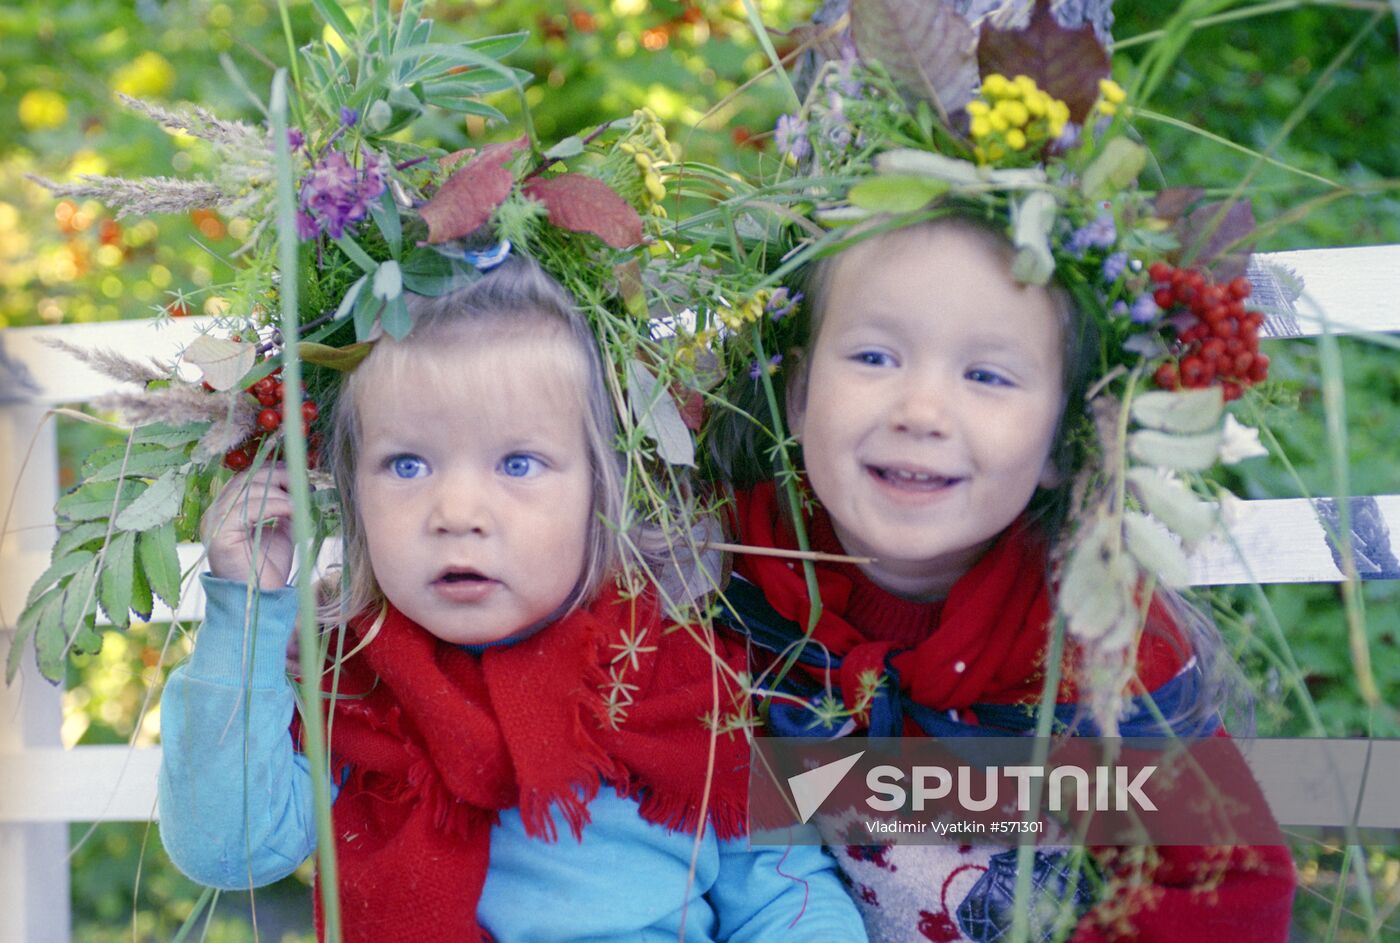 Children in Kriushkino village